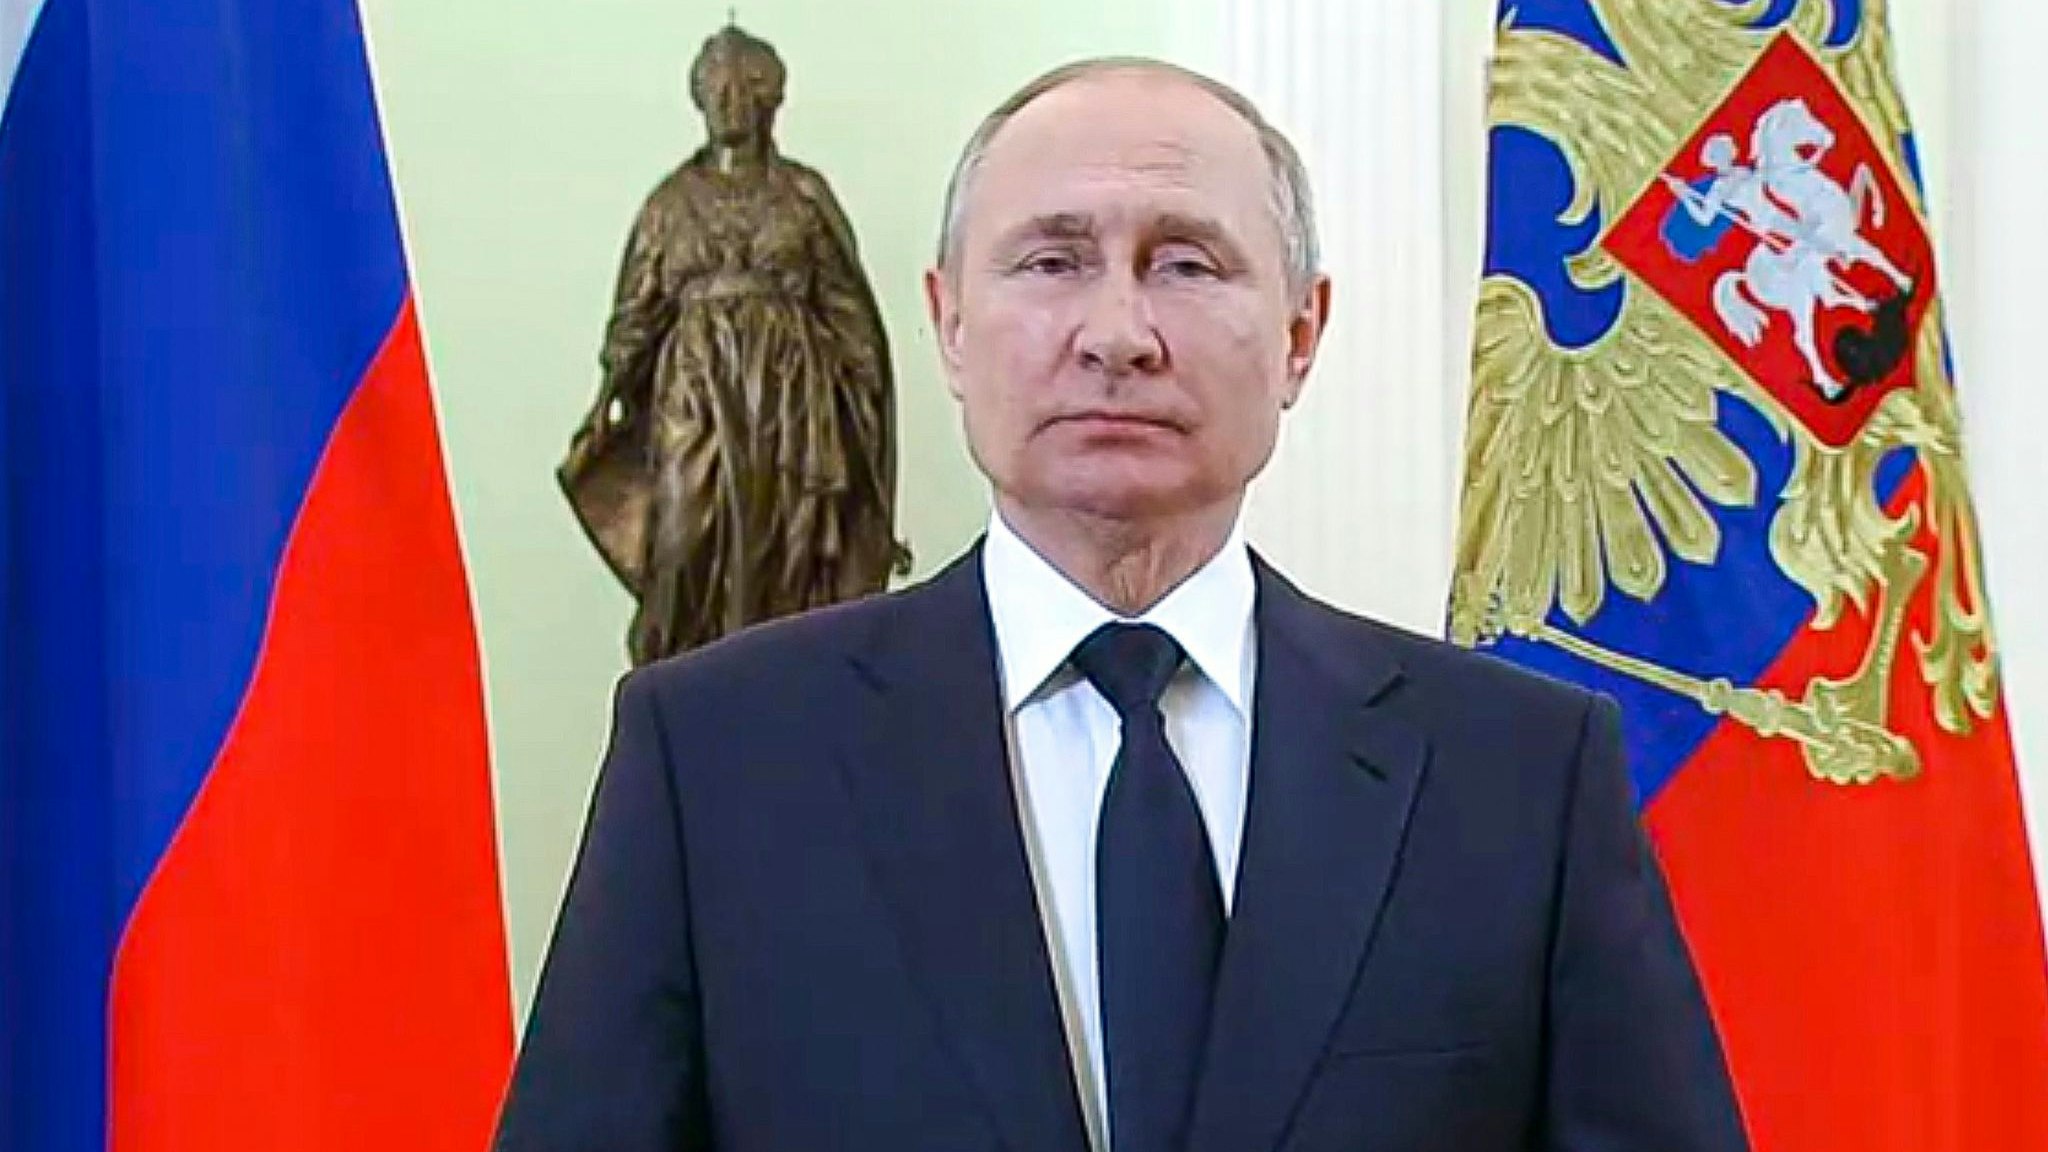 Olaf Scholz und Emmanuel Macron haben den russischen Präsidenten Wladimir Putin zu einem sofortigen Waffenstillstand in der Ukraine aufgefordert. Foto: Uncredited/Russian Presidential Press Service/dpa